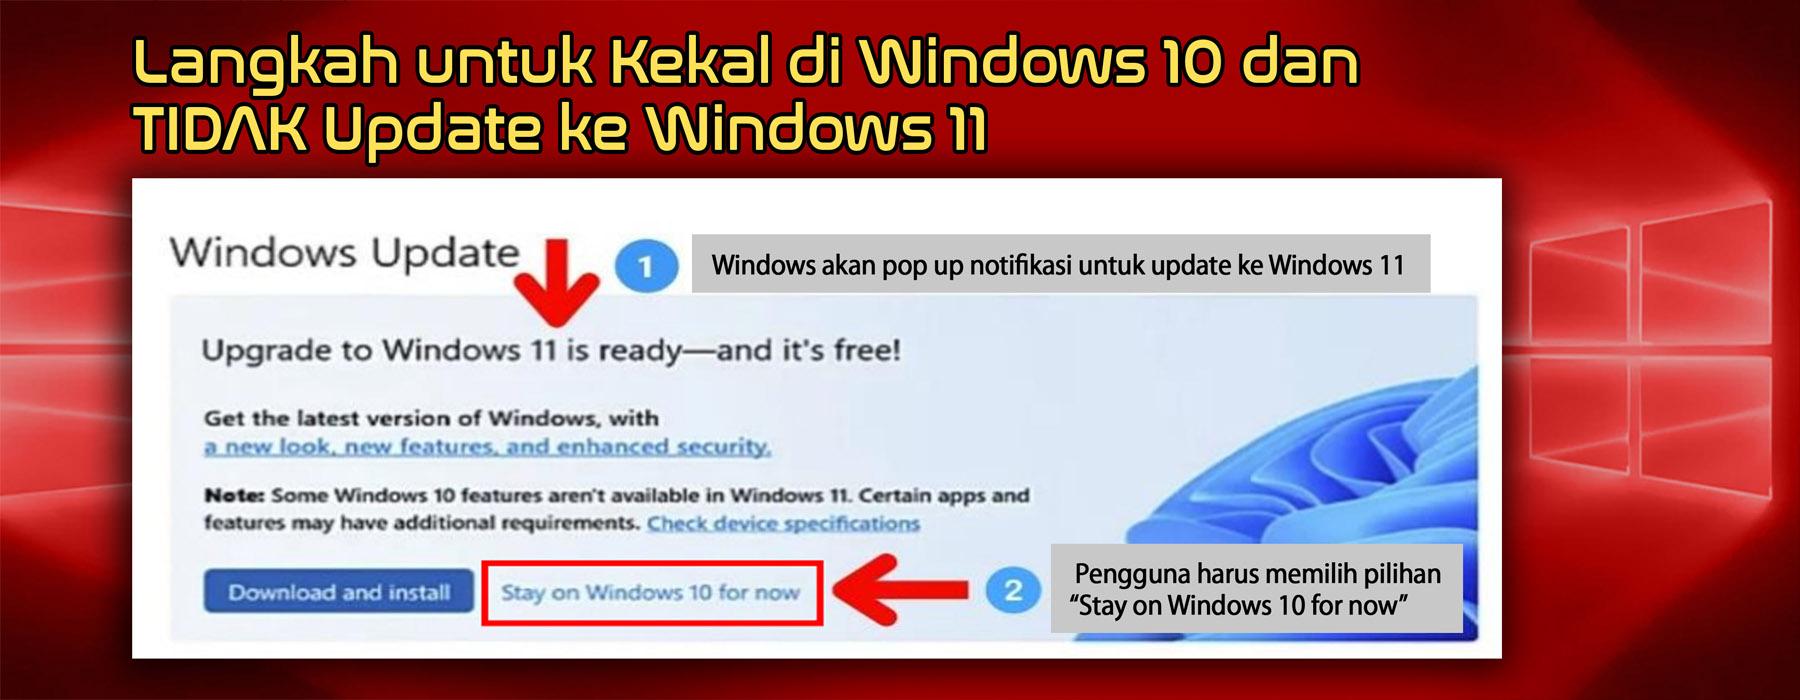 Tidak Kemaskini Windows 10 ke Windows 11